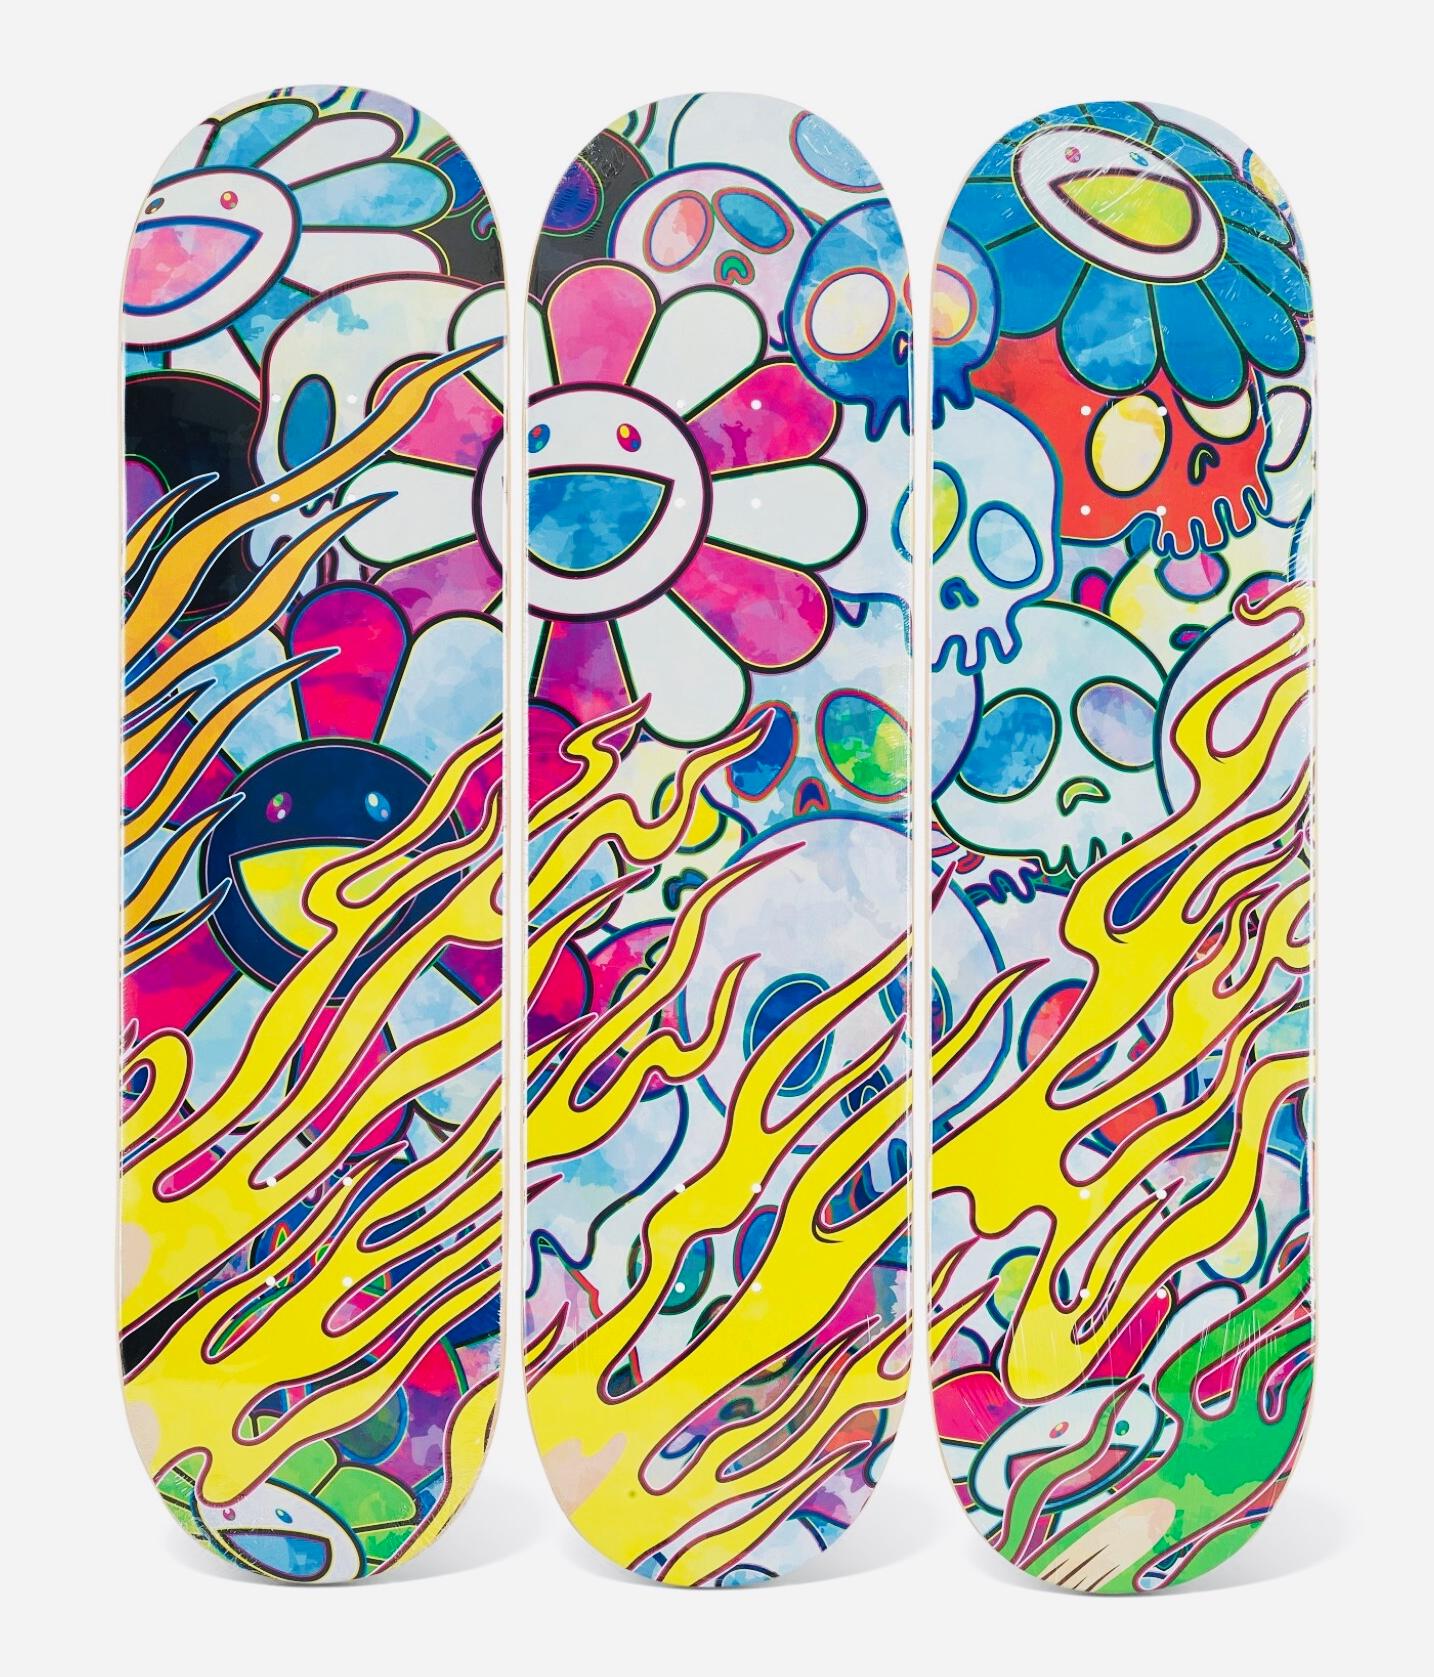 3er-Set Takashi Murakami Skateboard Decks 2018:
Ein herausragendes Triptychon von Takashi Murakami, das in einer limitierten Serie produziert wurde. Ein brillantes Set, das für eine lebendige, einzigartige Wandkunst sorgt, die sich mit Leichtigkeit